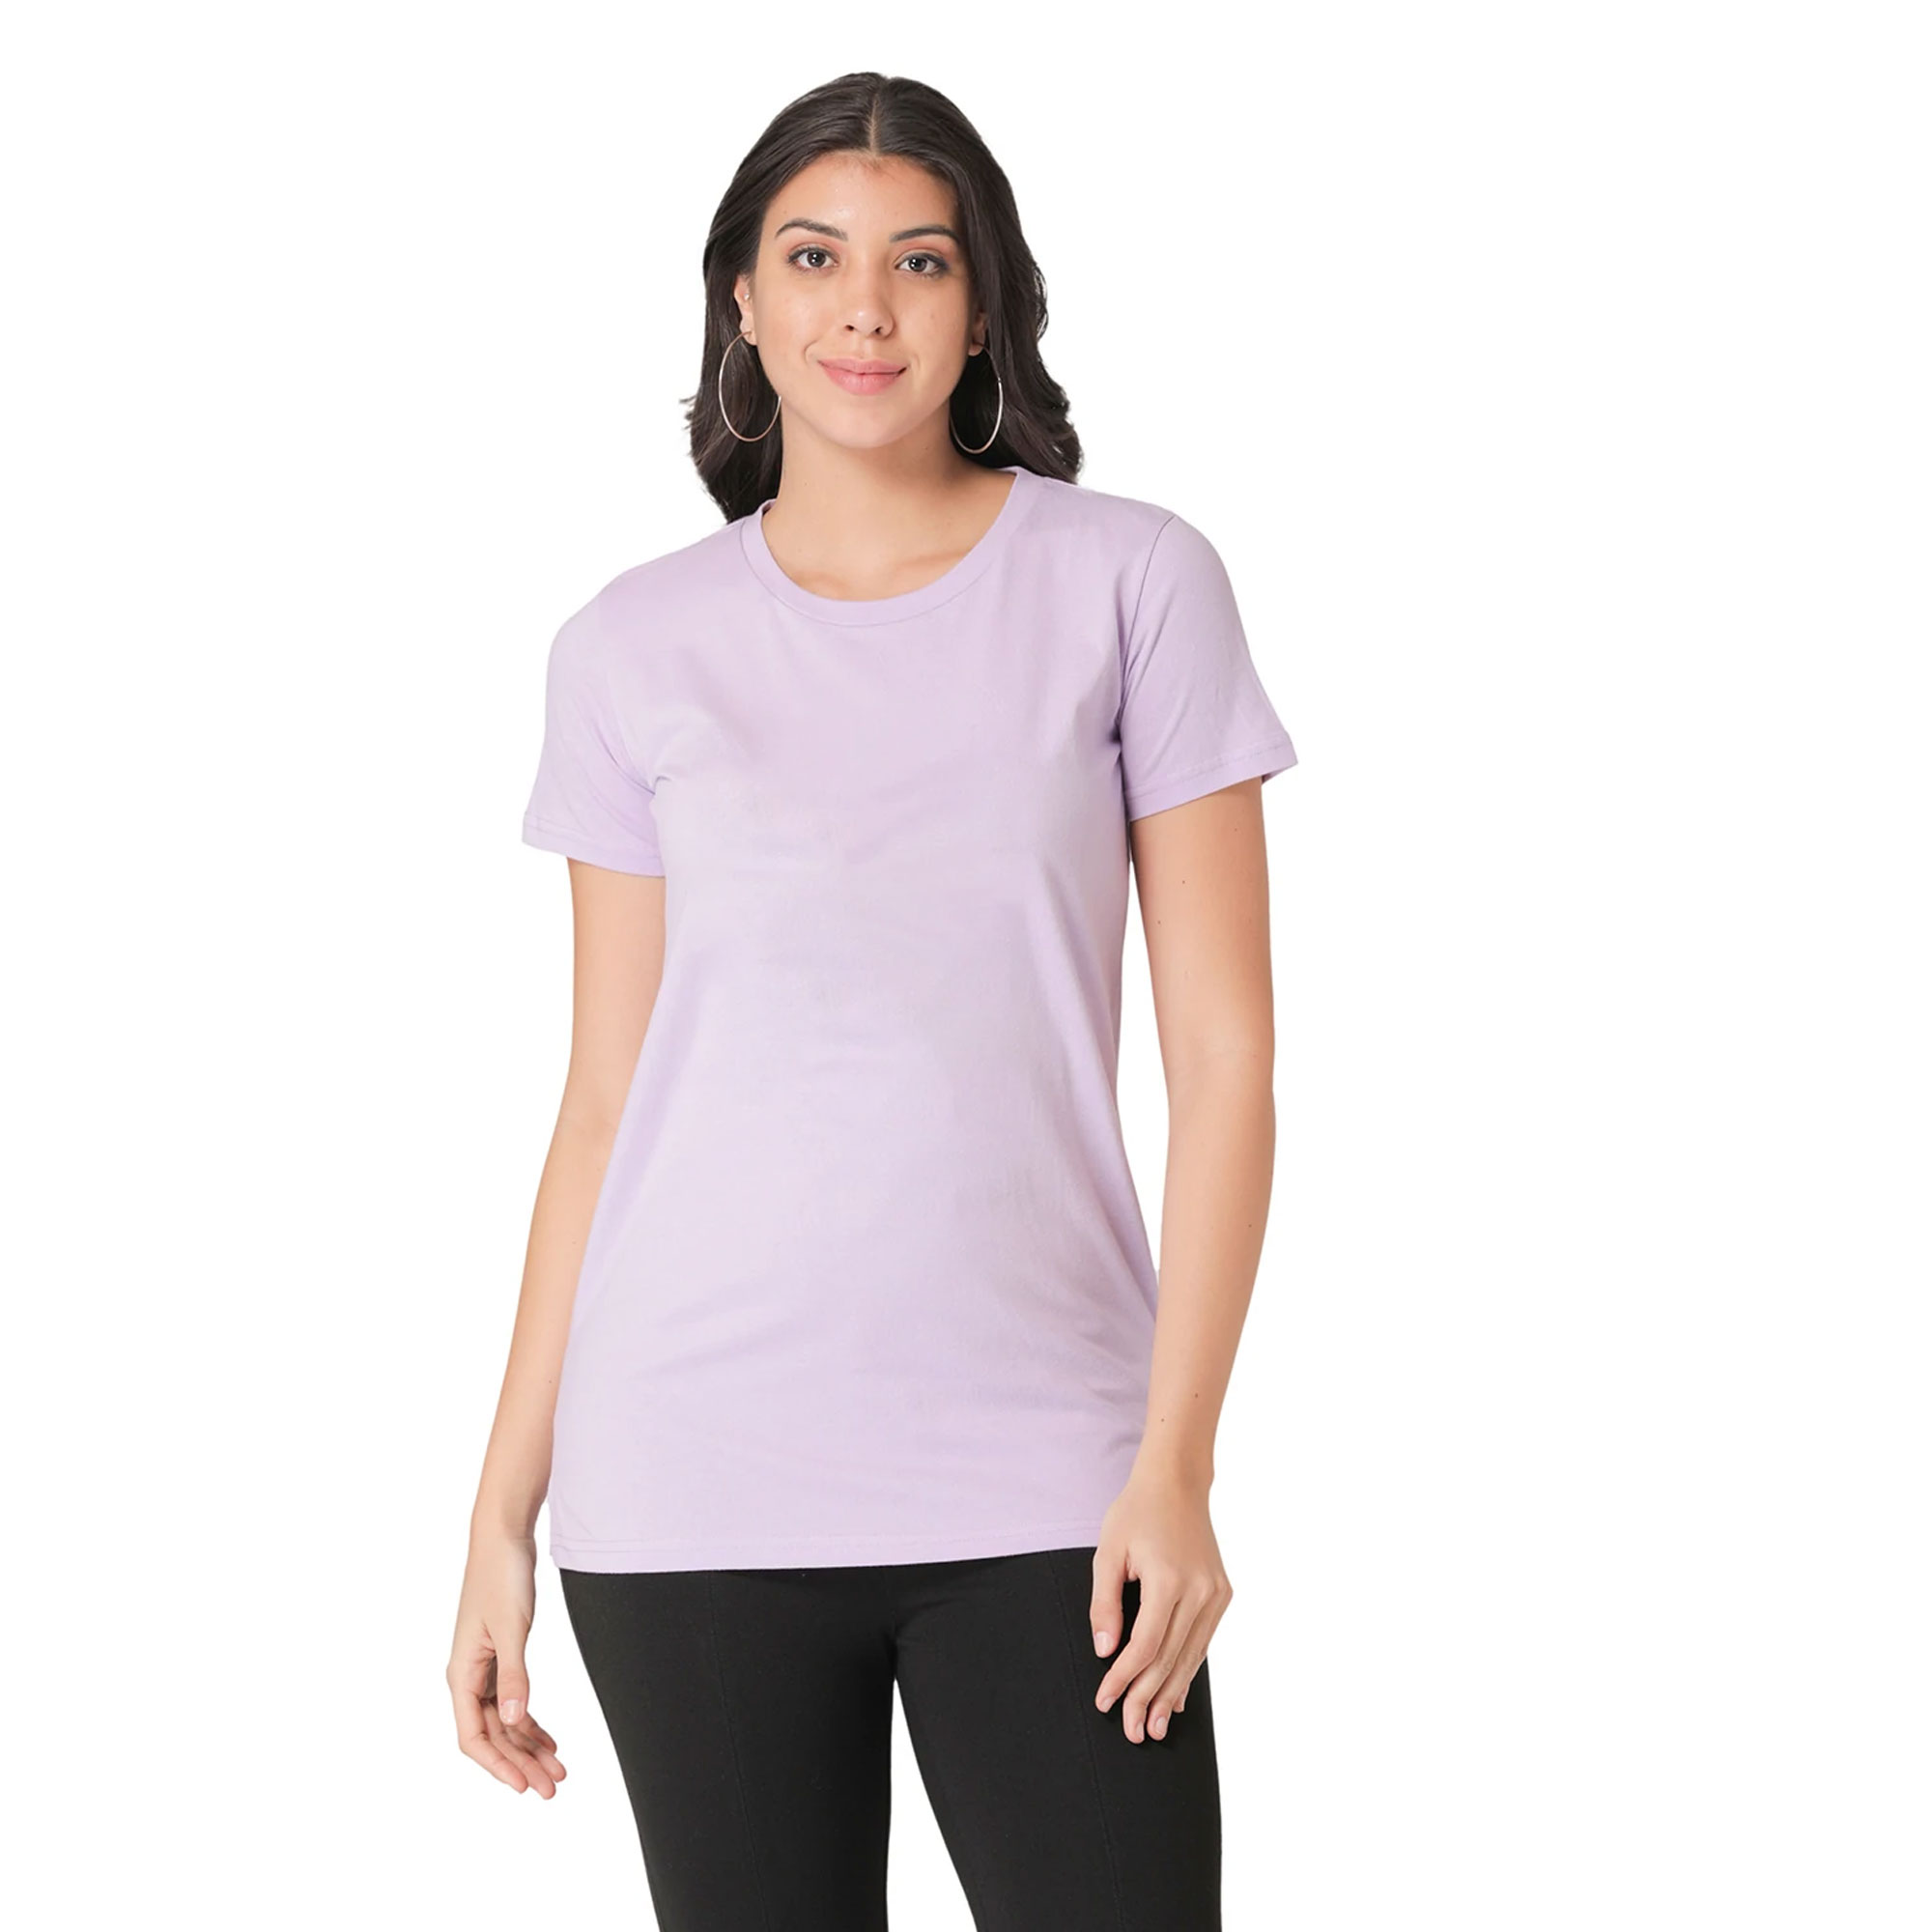 Großhandels-kundenspezifisches T-Shirt-Frauen-T-Shirt Übergröße-Frauen-Fitness-T-Shirt